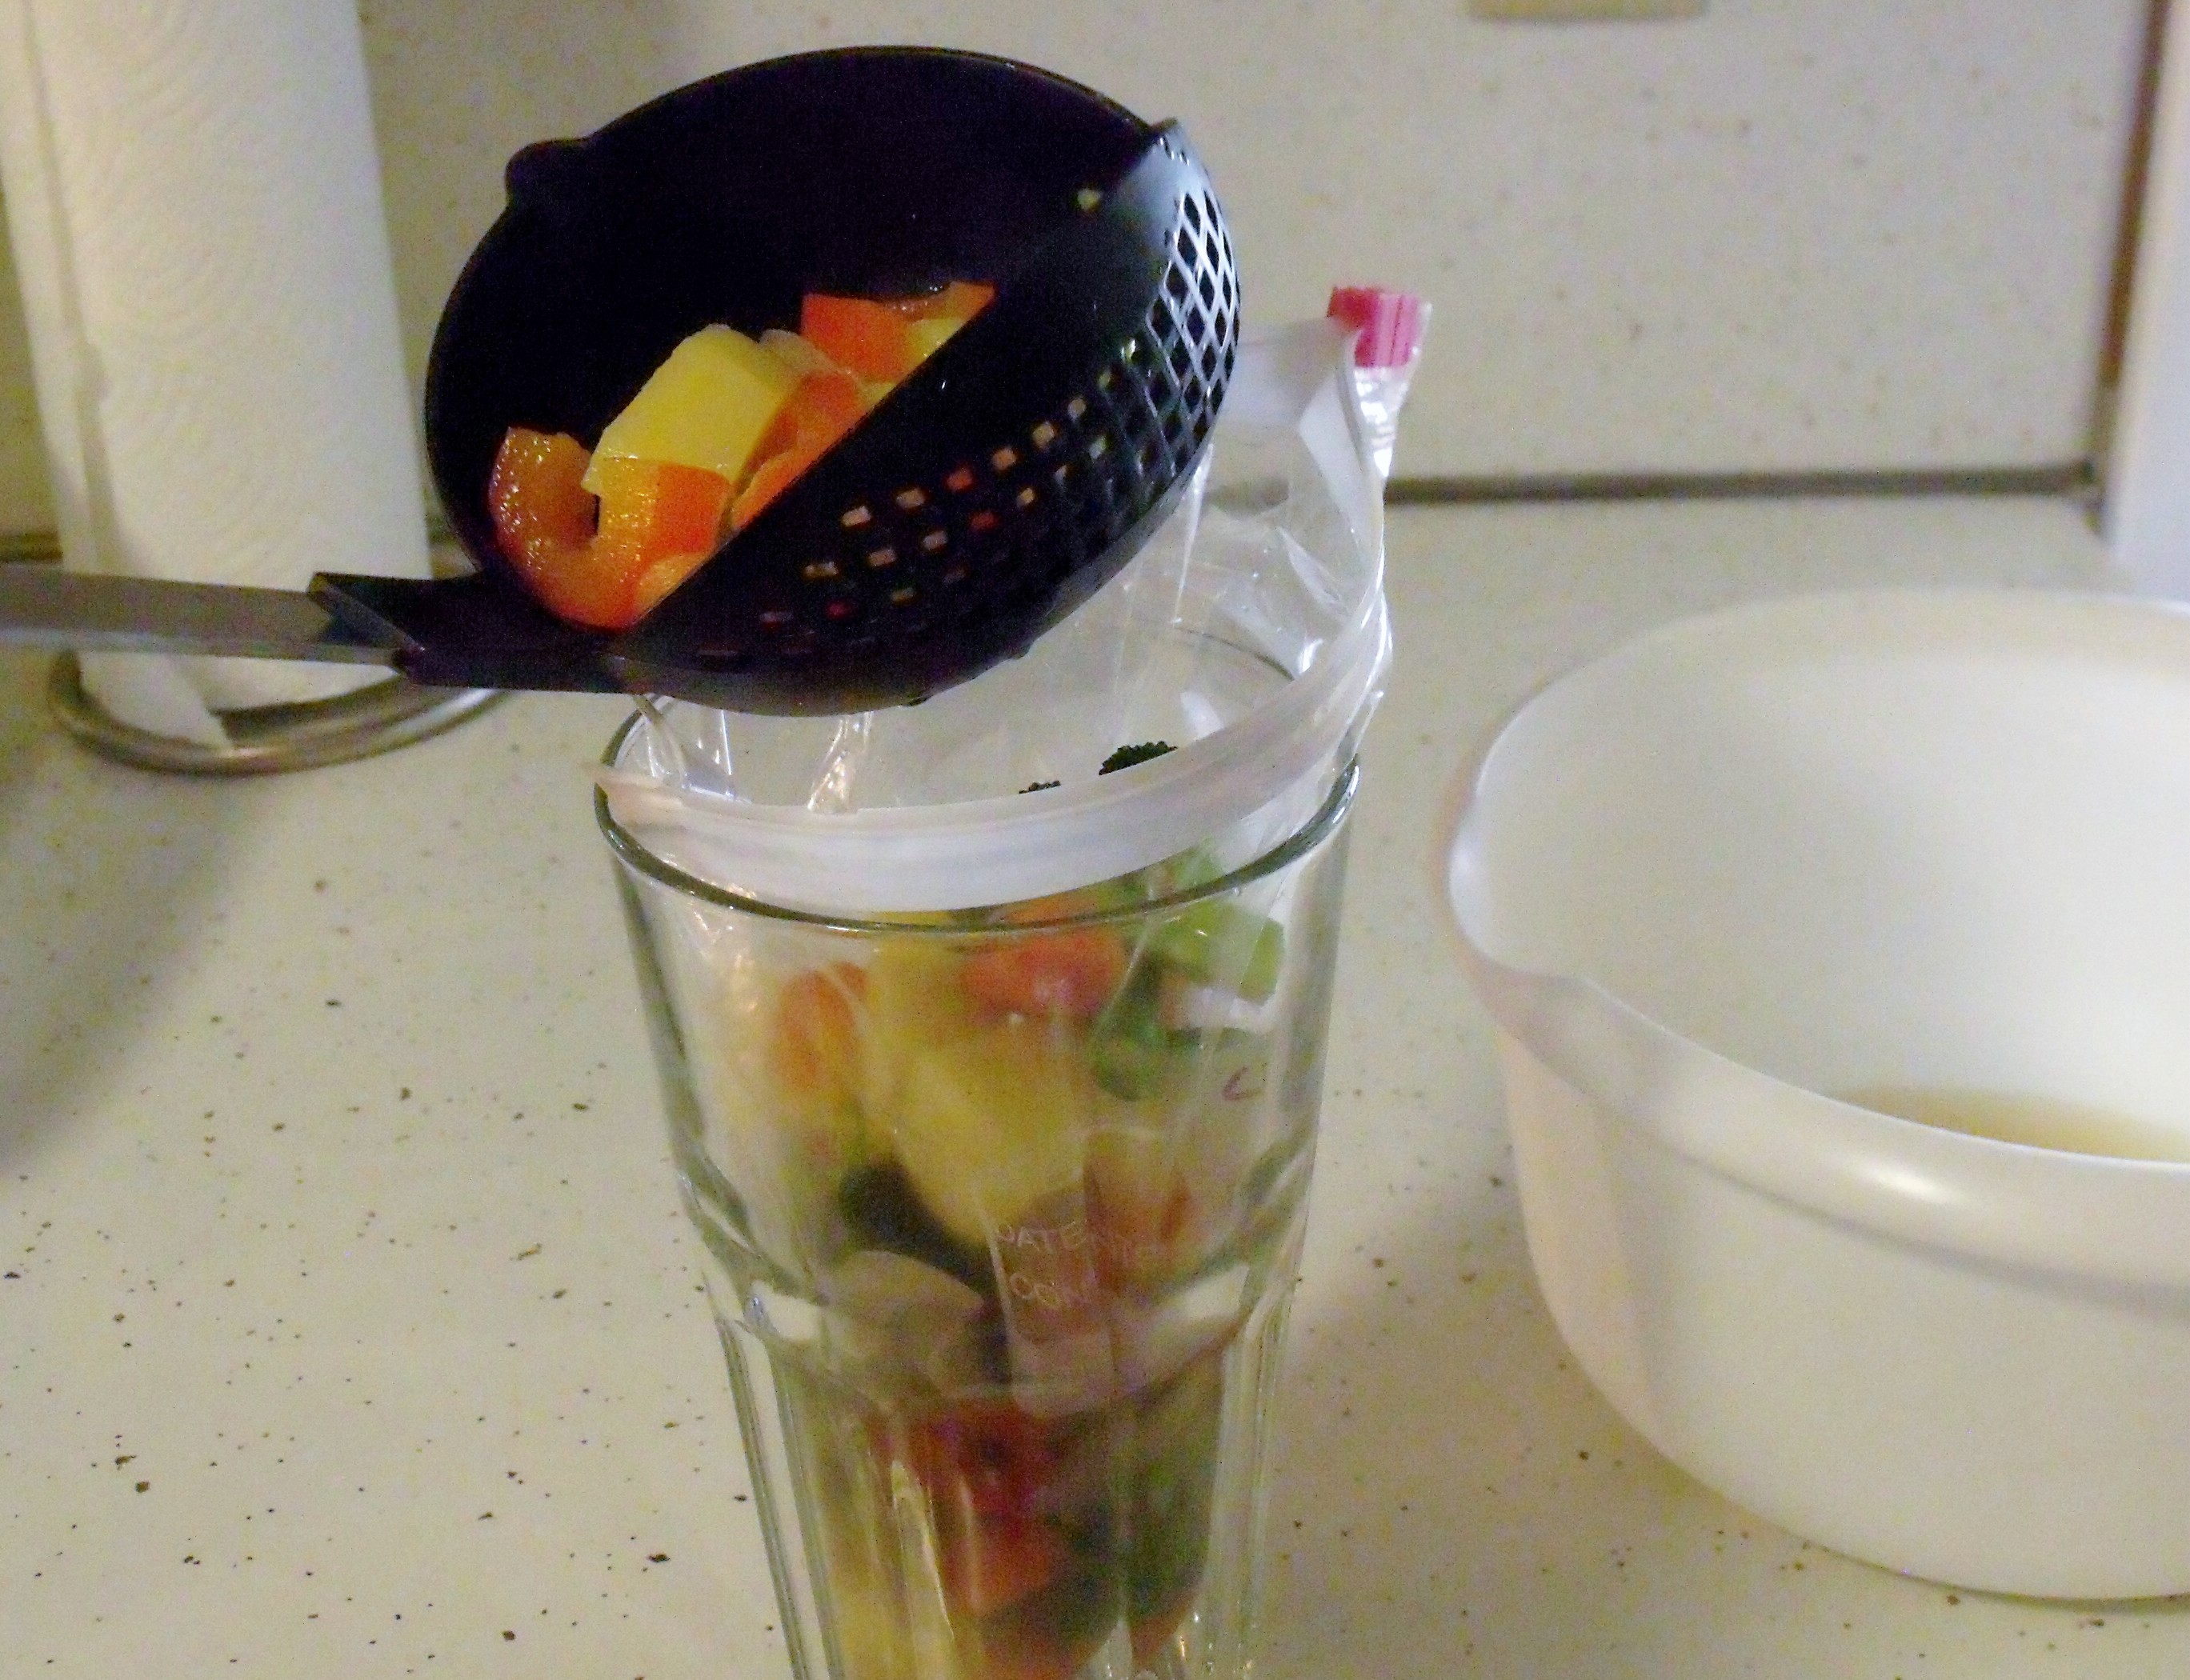 Fall Harvest Mason Jar Salad - Marisa Moore Nutrition